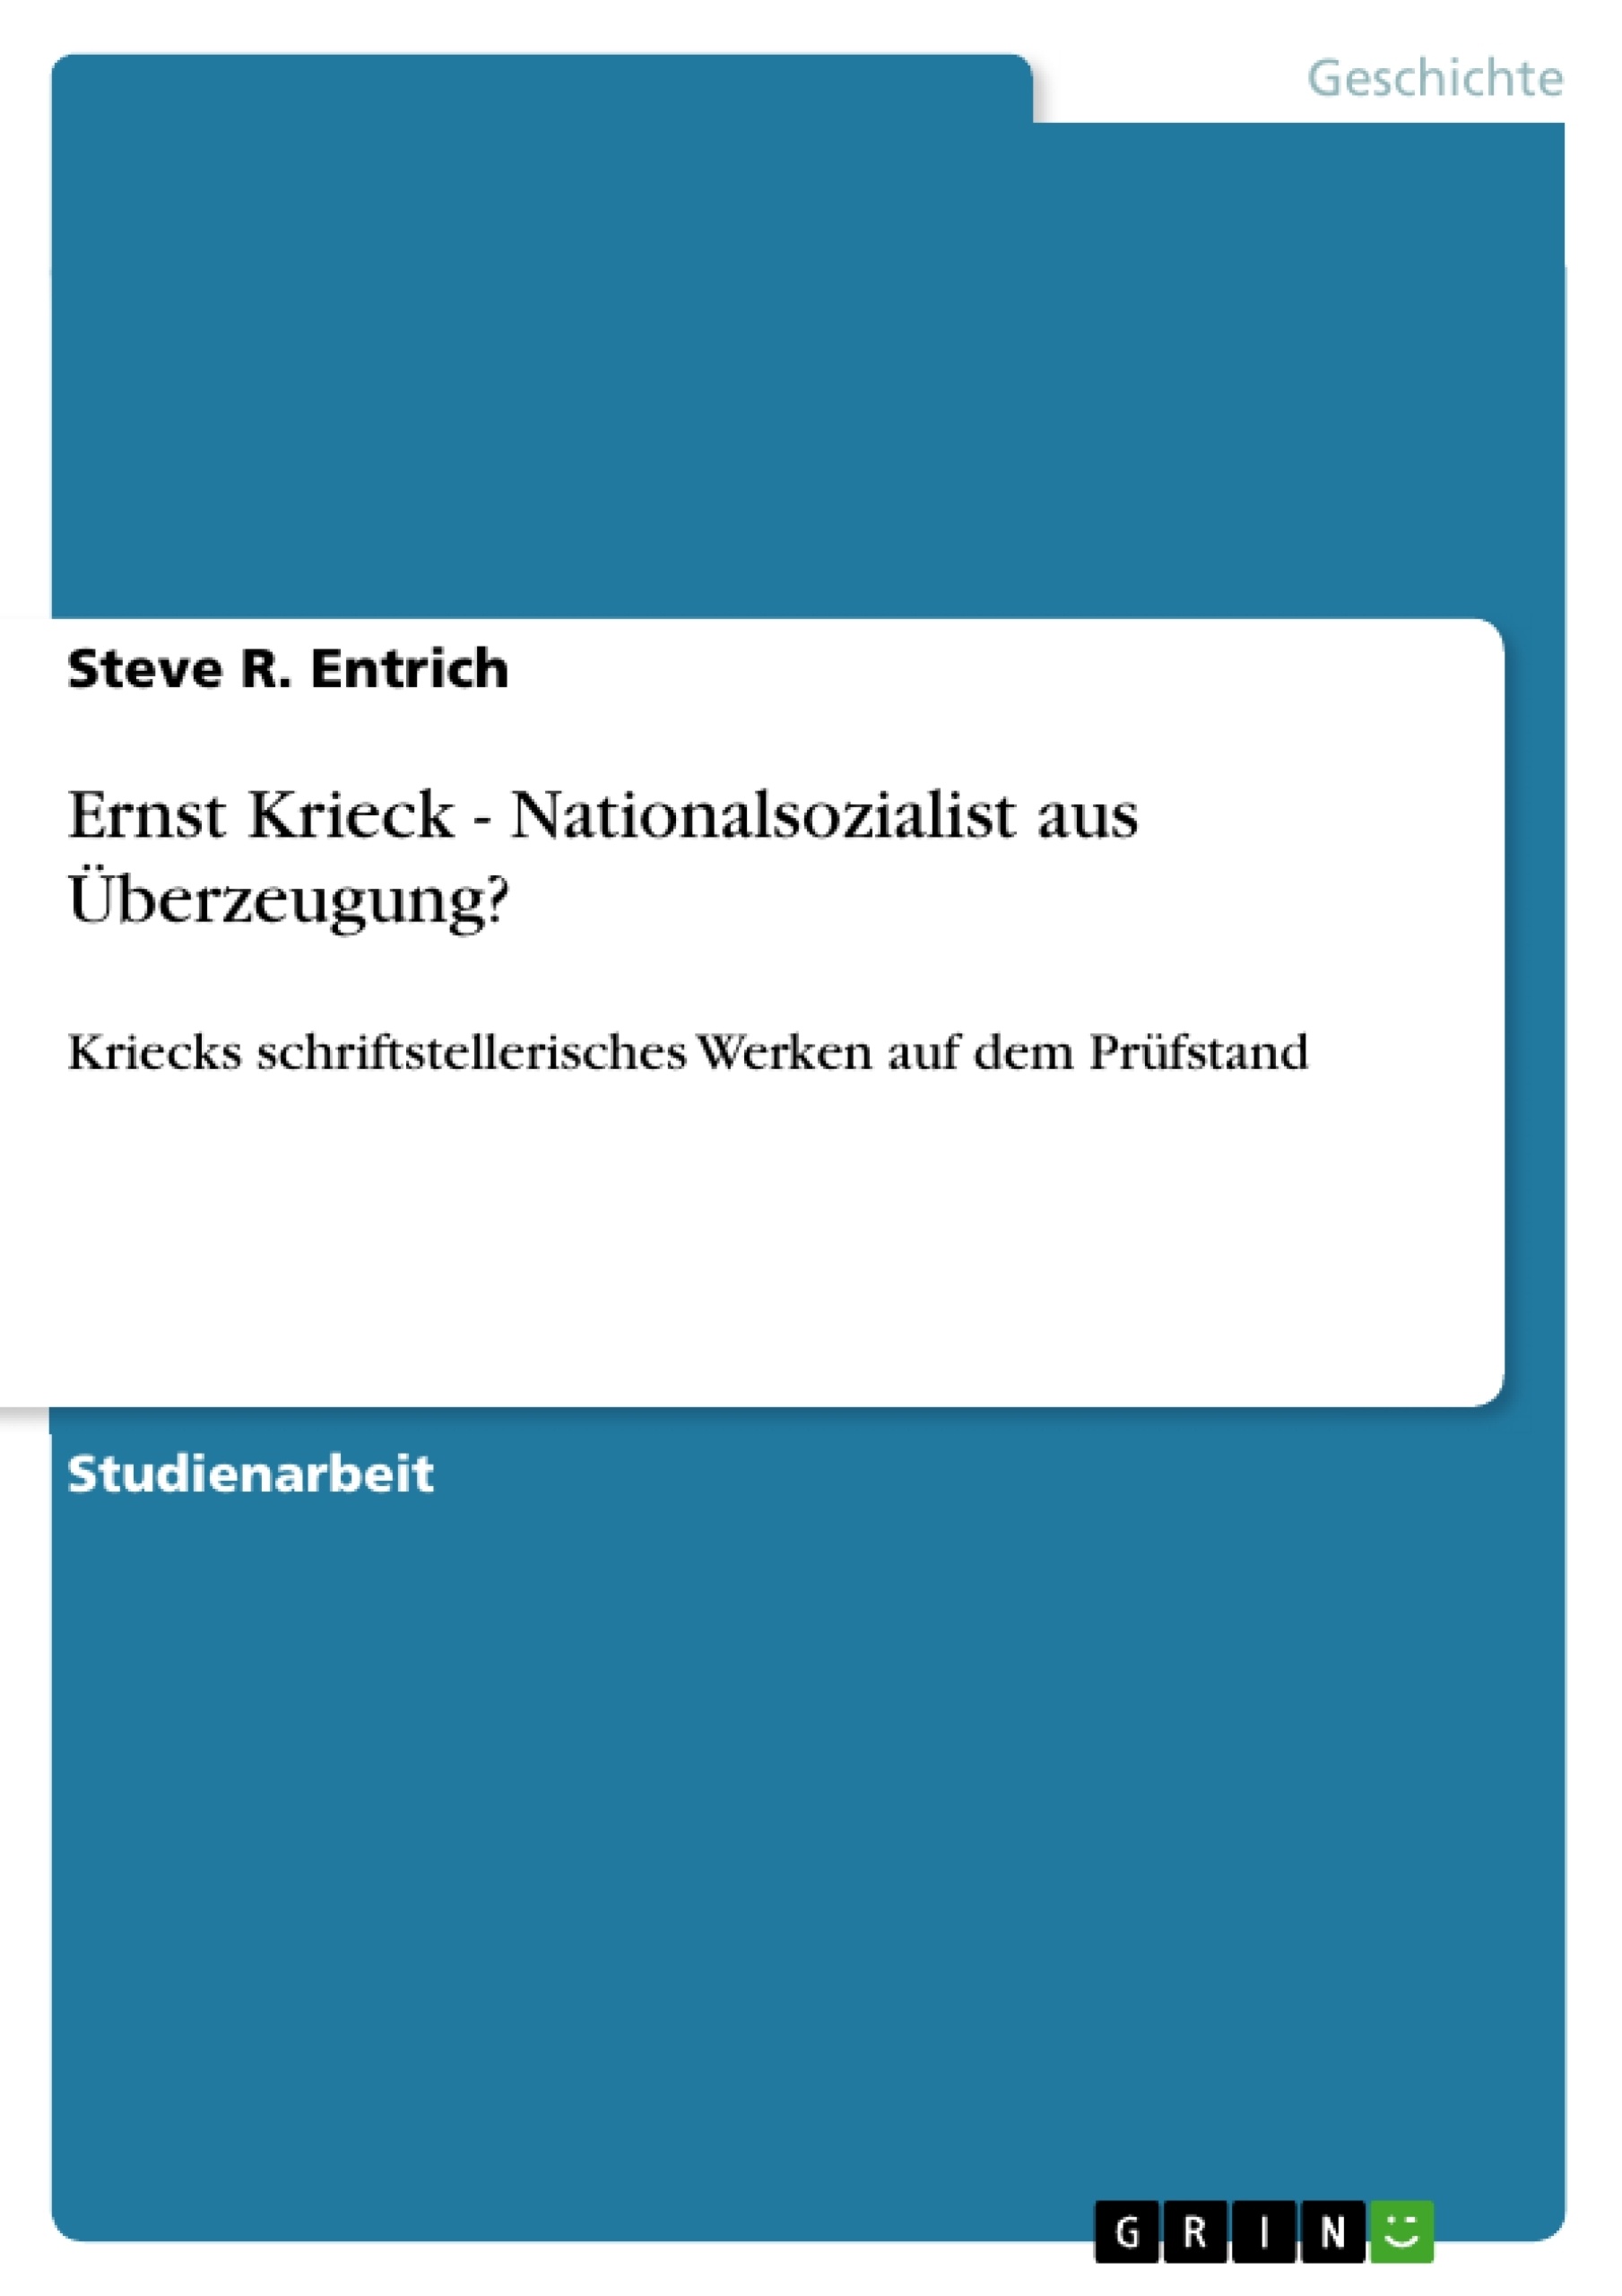 Título: Ernst Krieck  - Nationalsozialist aus Überzeugung?